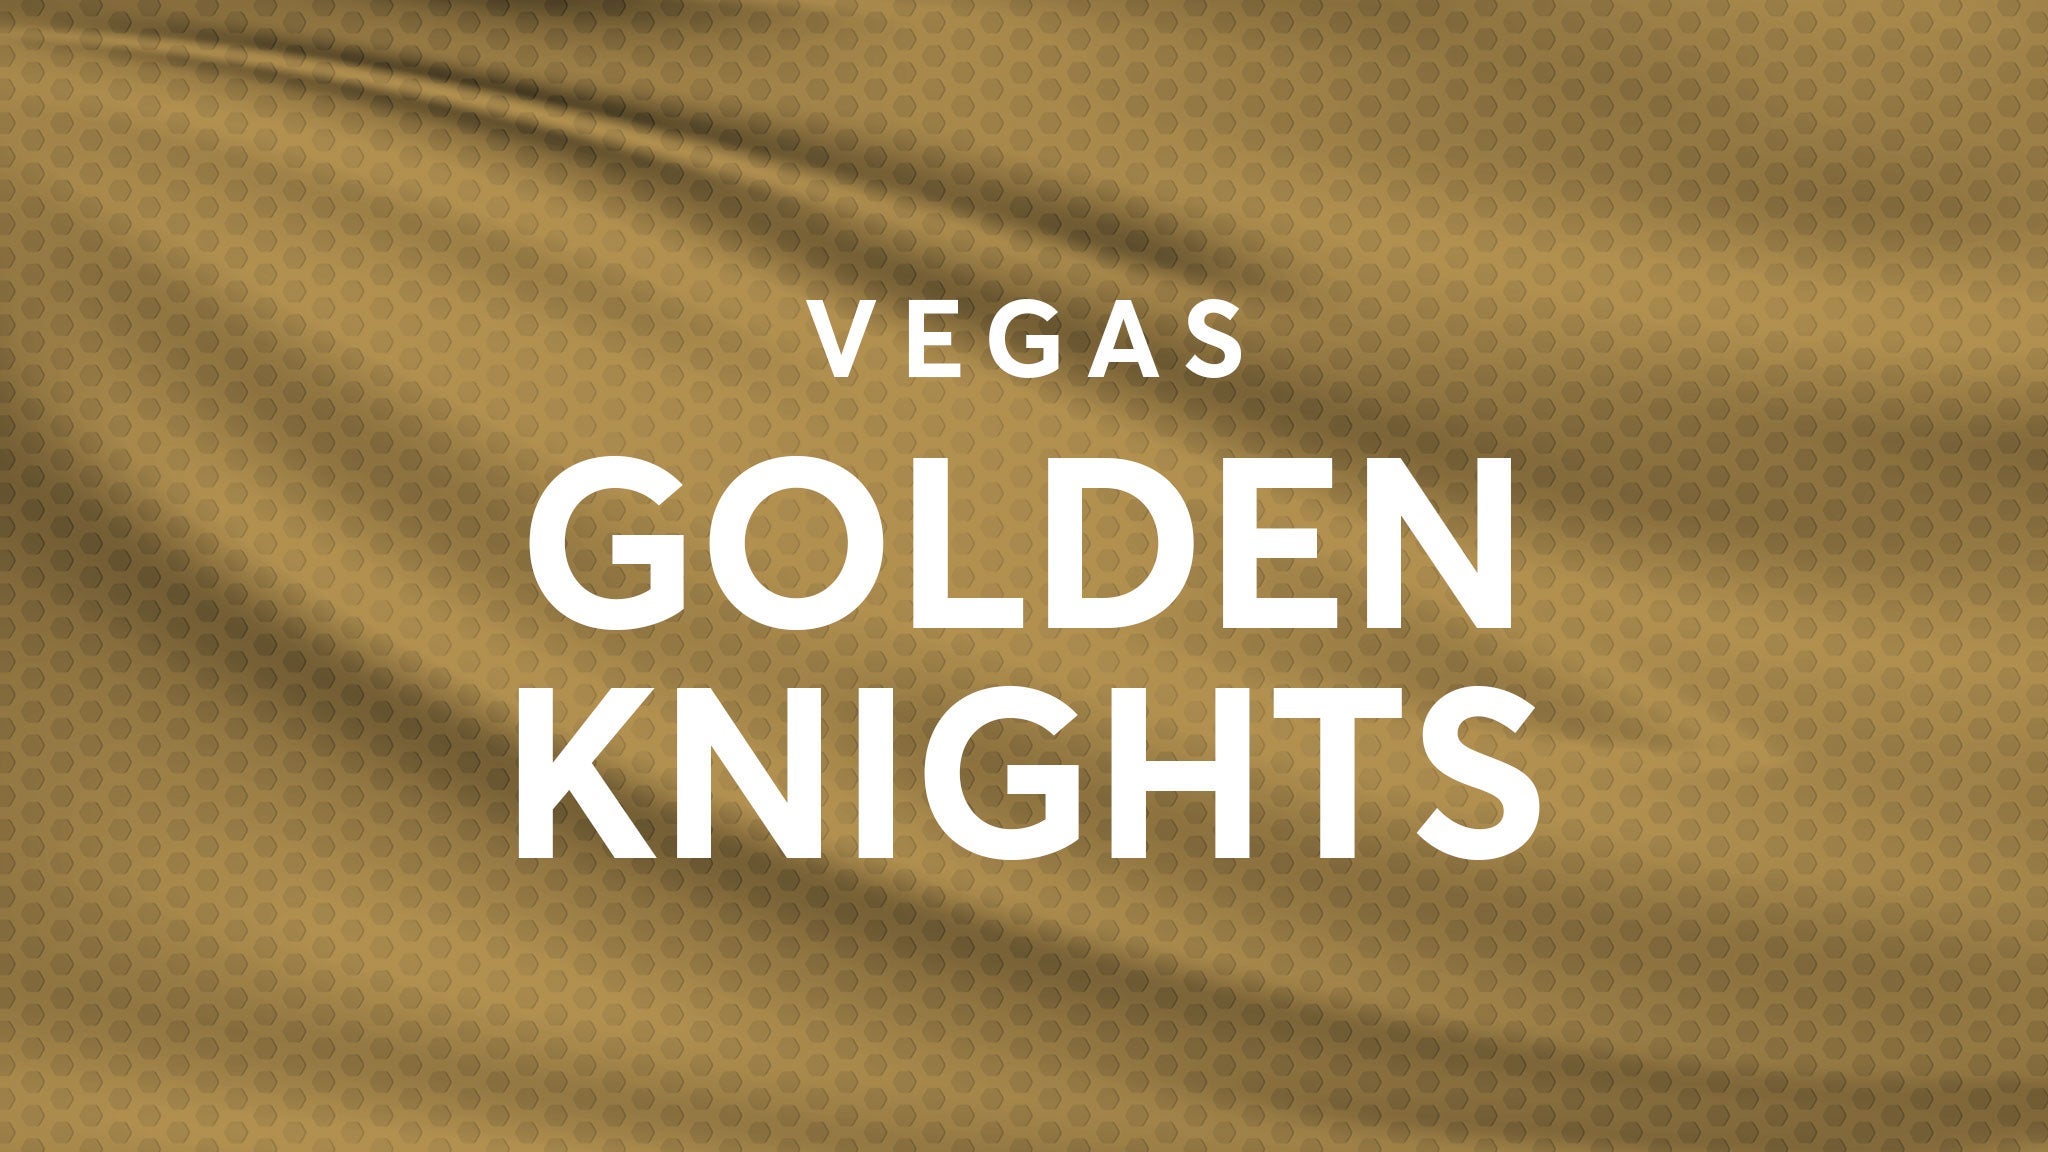 Vegas Golden Knights vs. Chicago Blackhawks